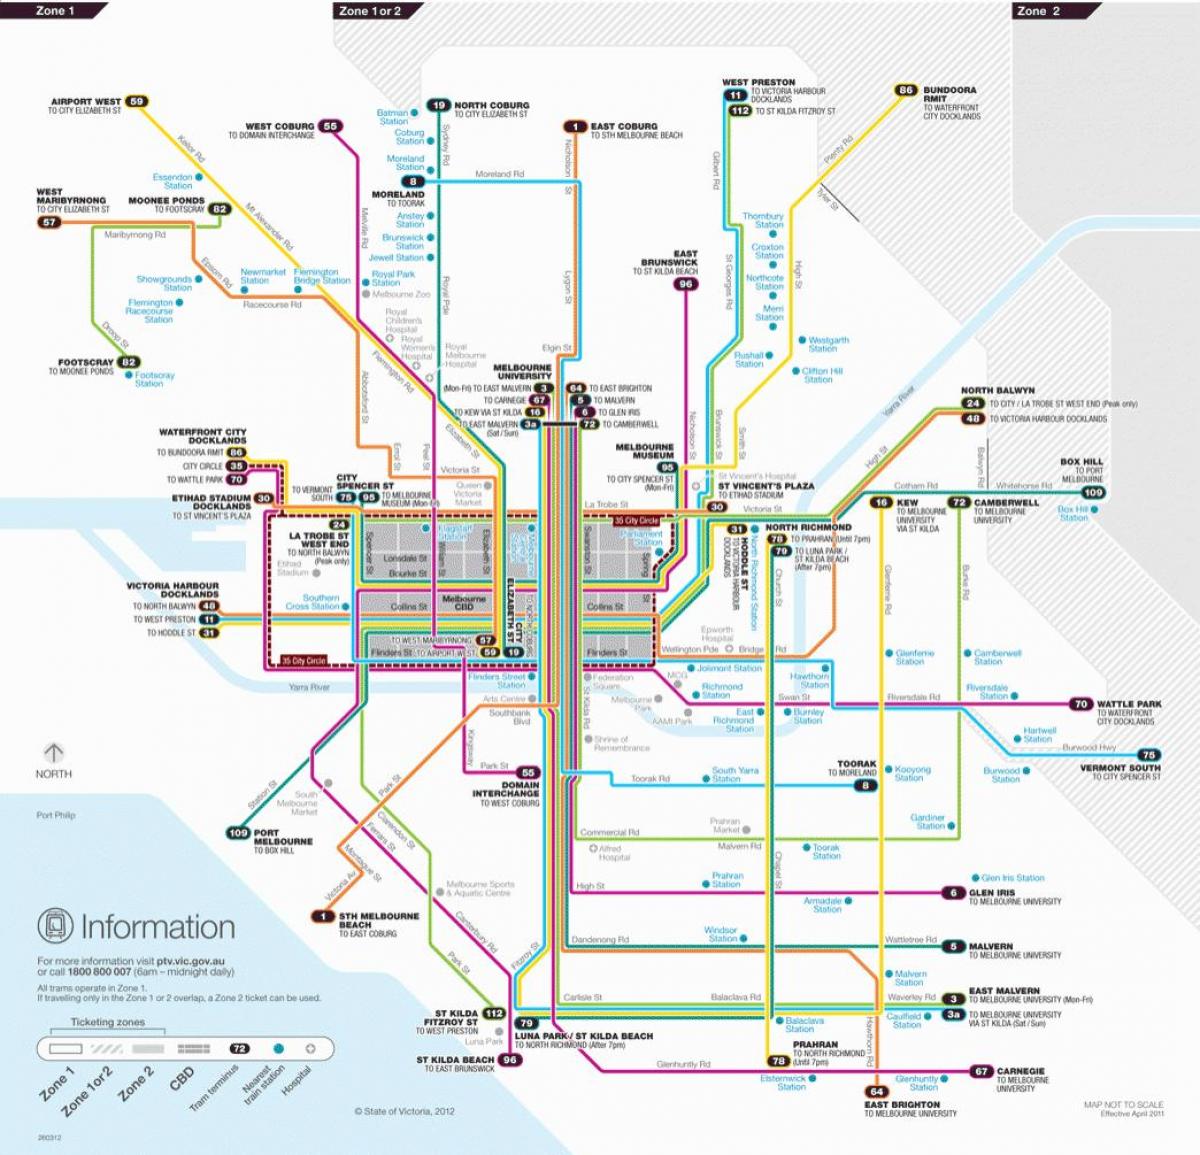 Melbourne tramvaj put mapu